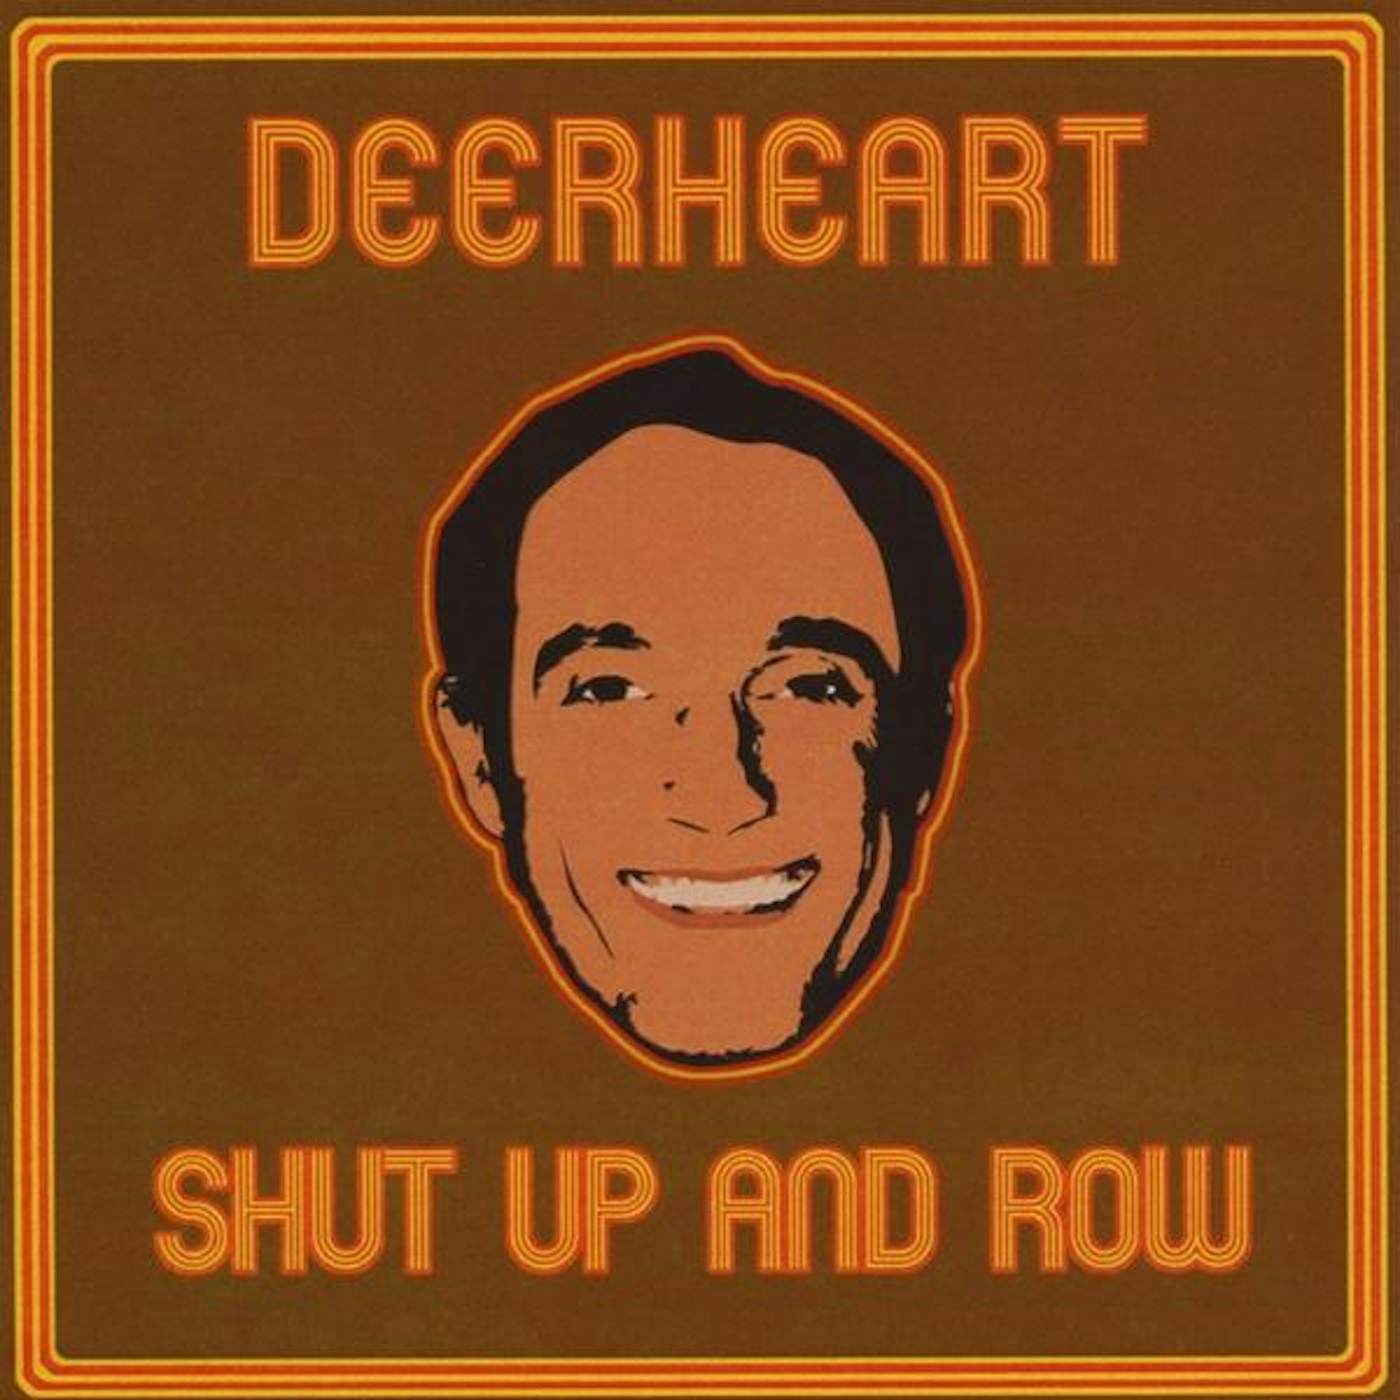 Deerheart SHUT UP & ROW CD